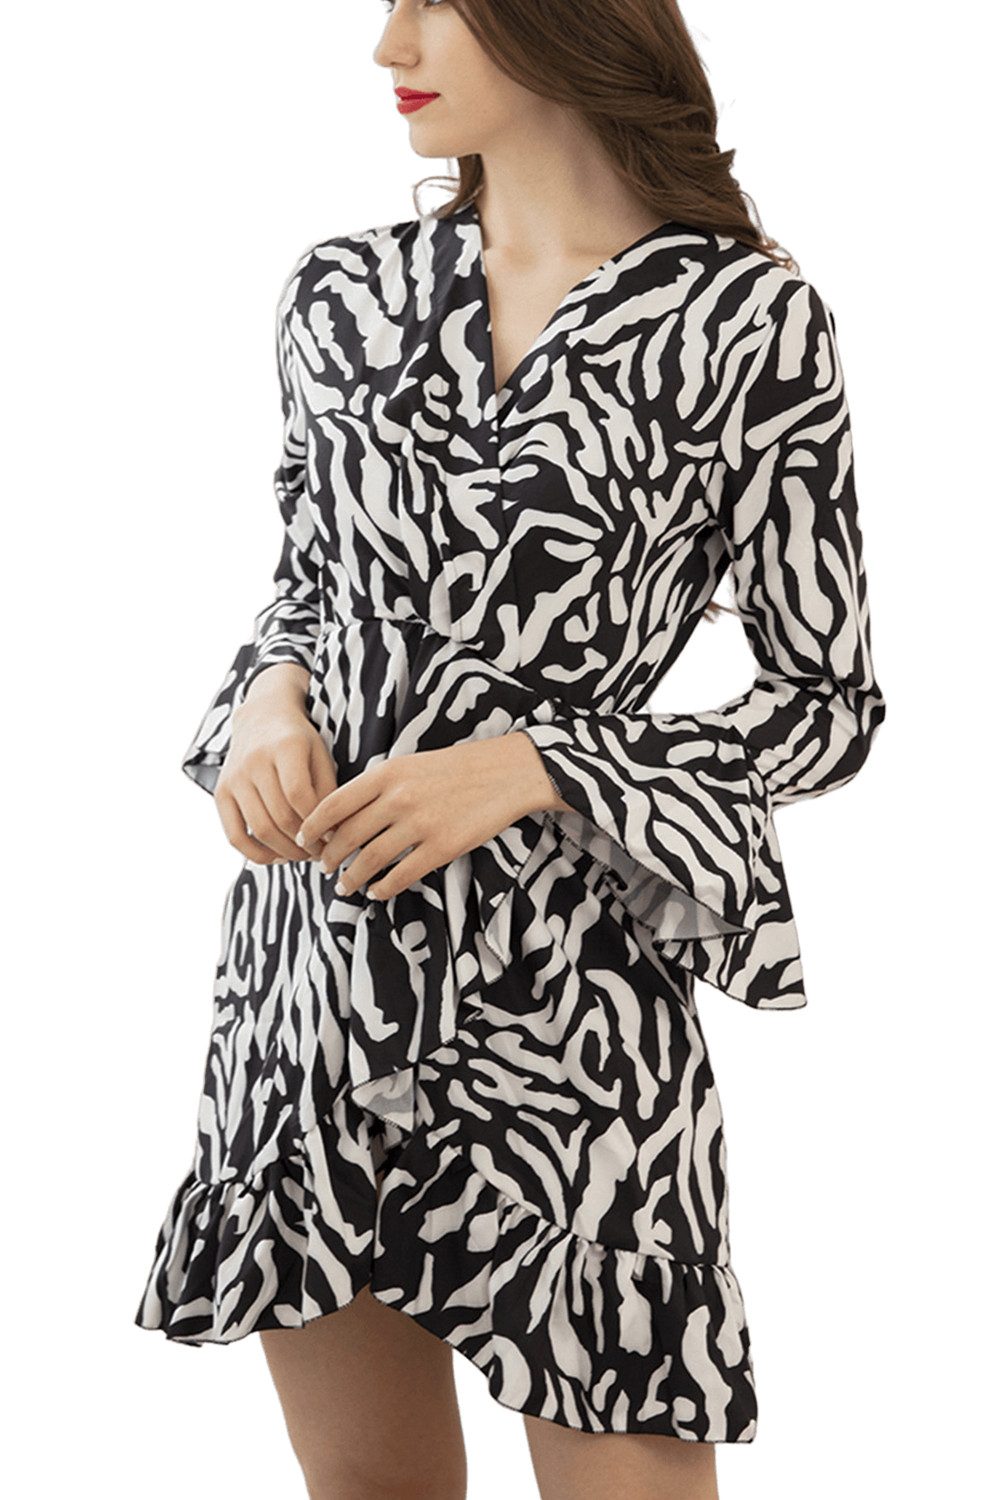 Orient Phoenix Petticoat-Kleid Damen Lässiges Druckkleid Ausgestellte Ärmel Minikleid Sommerkleid Frühling Schwarz Weiß Colorblocking Kurze Petticoat-Kleid Partykleid